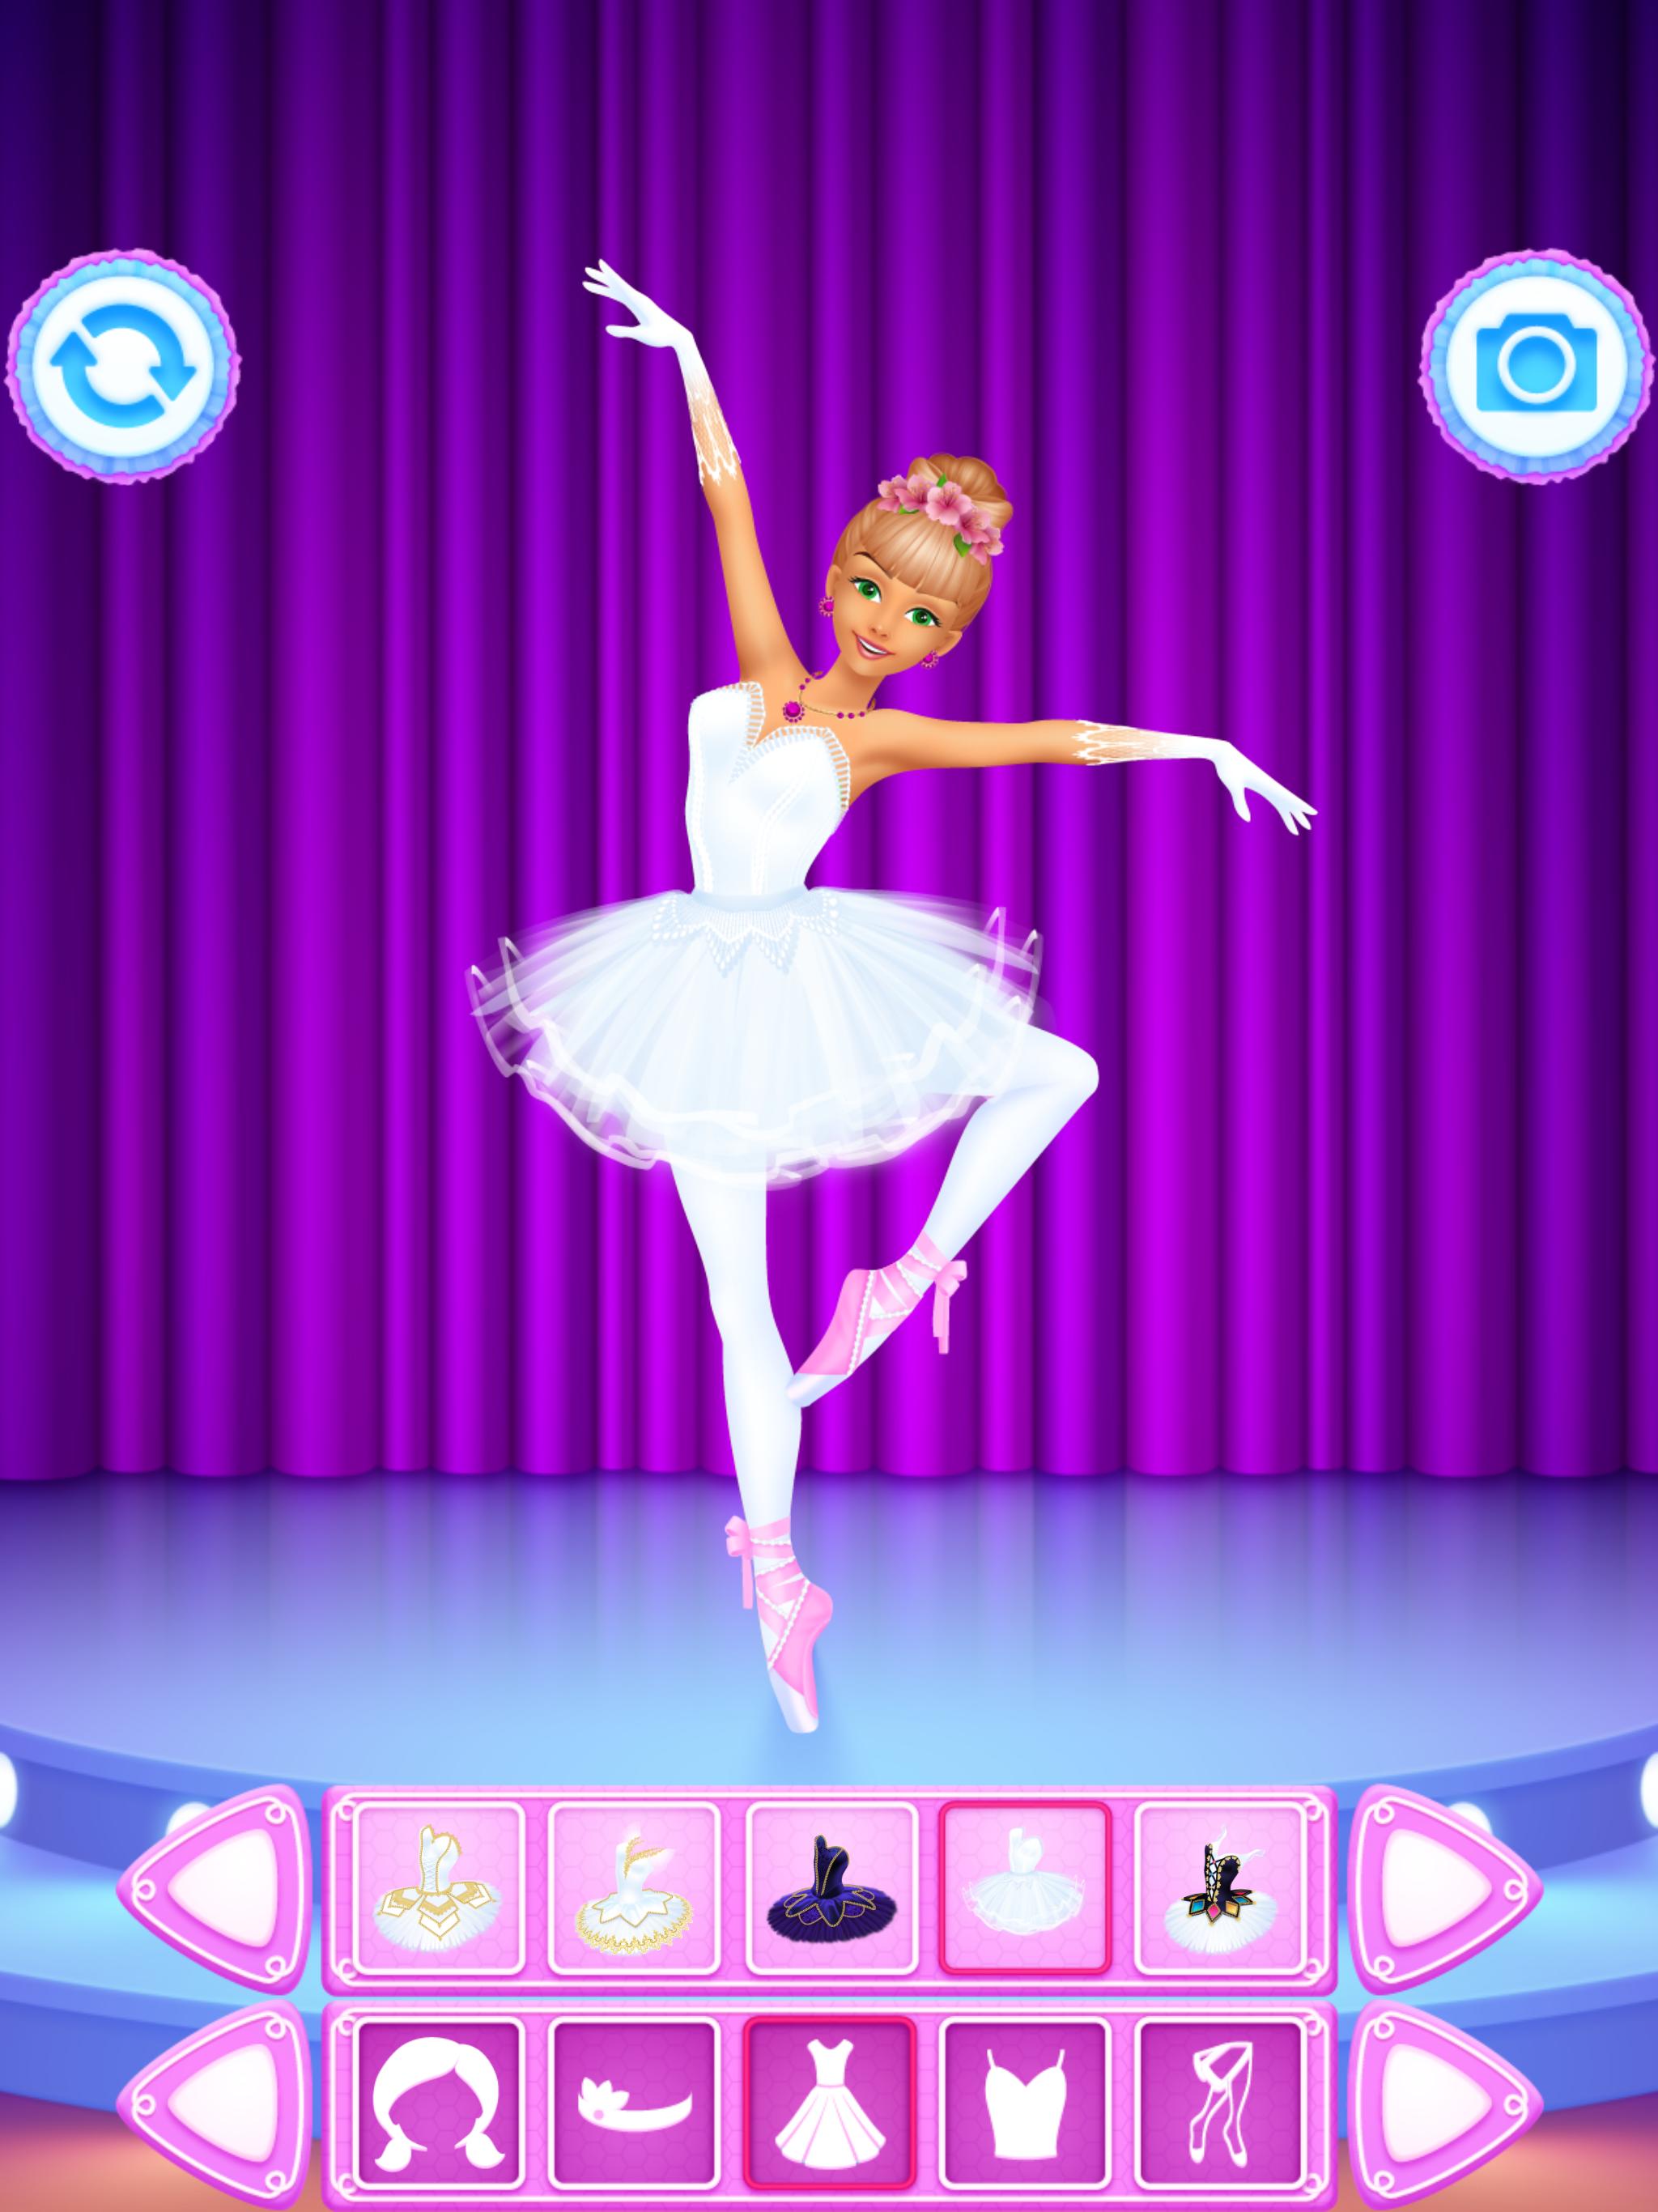 لعبة تلبيس راقصة الباليه for Android - APK Download